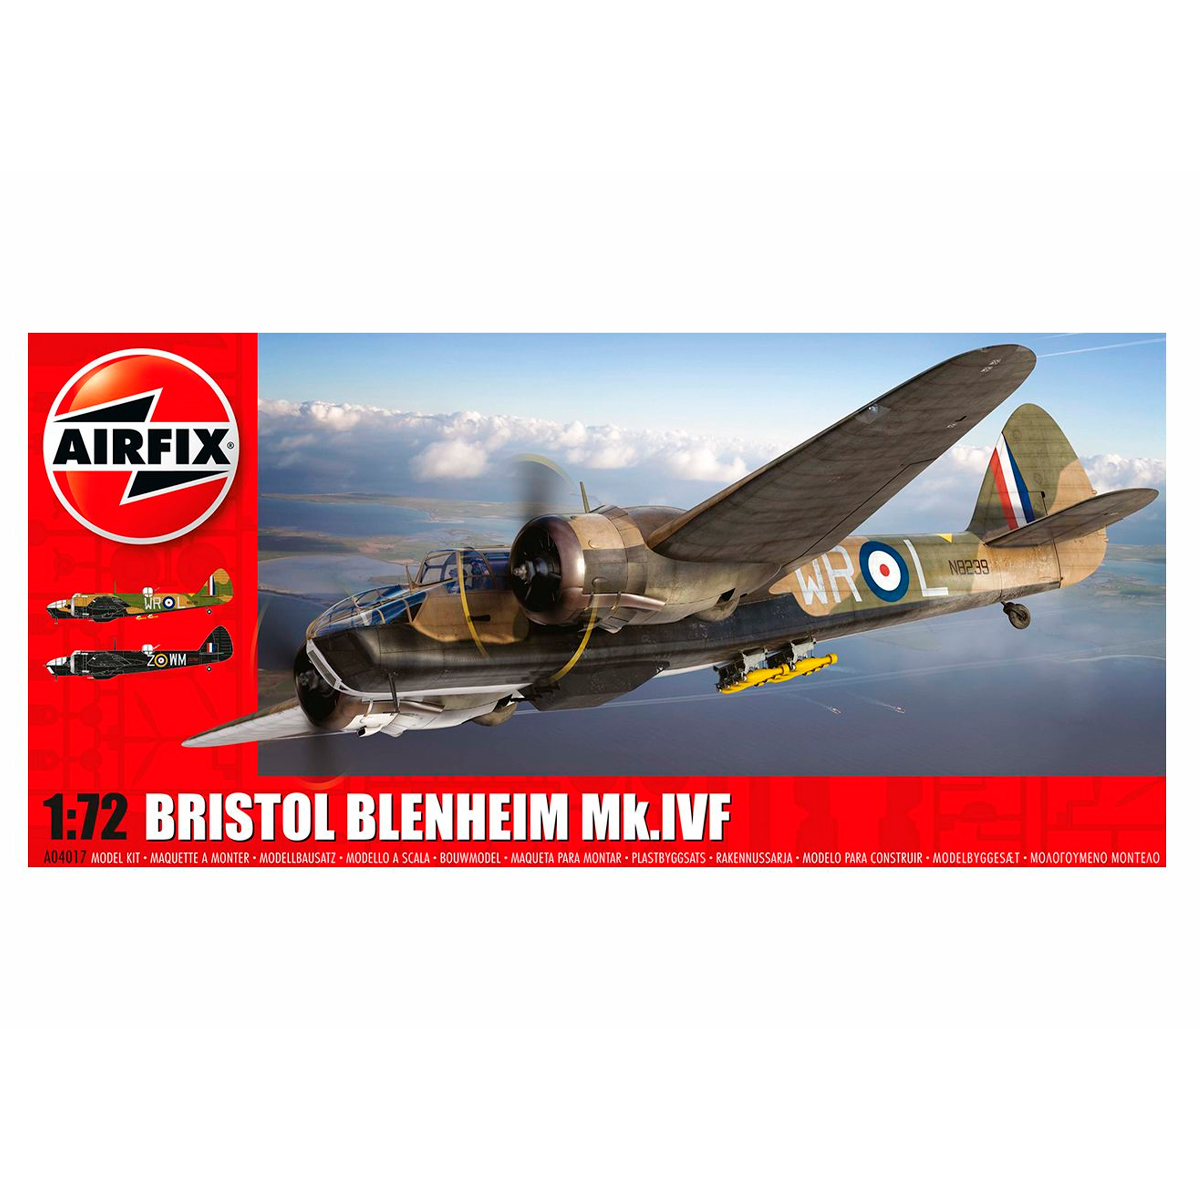 Bristol Blenheim Mkiv Fighter 1/72